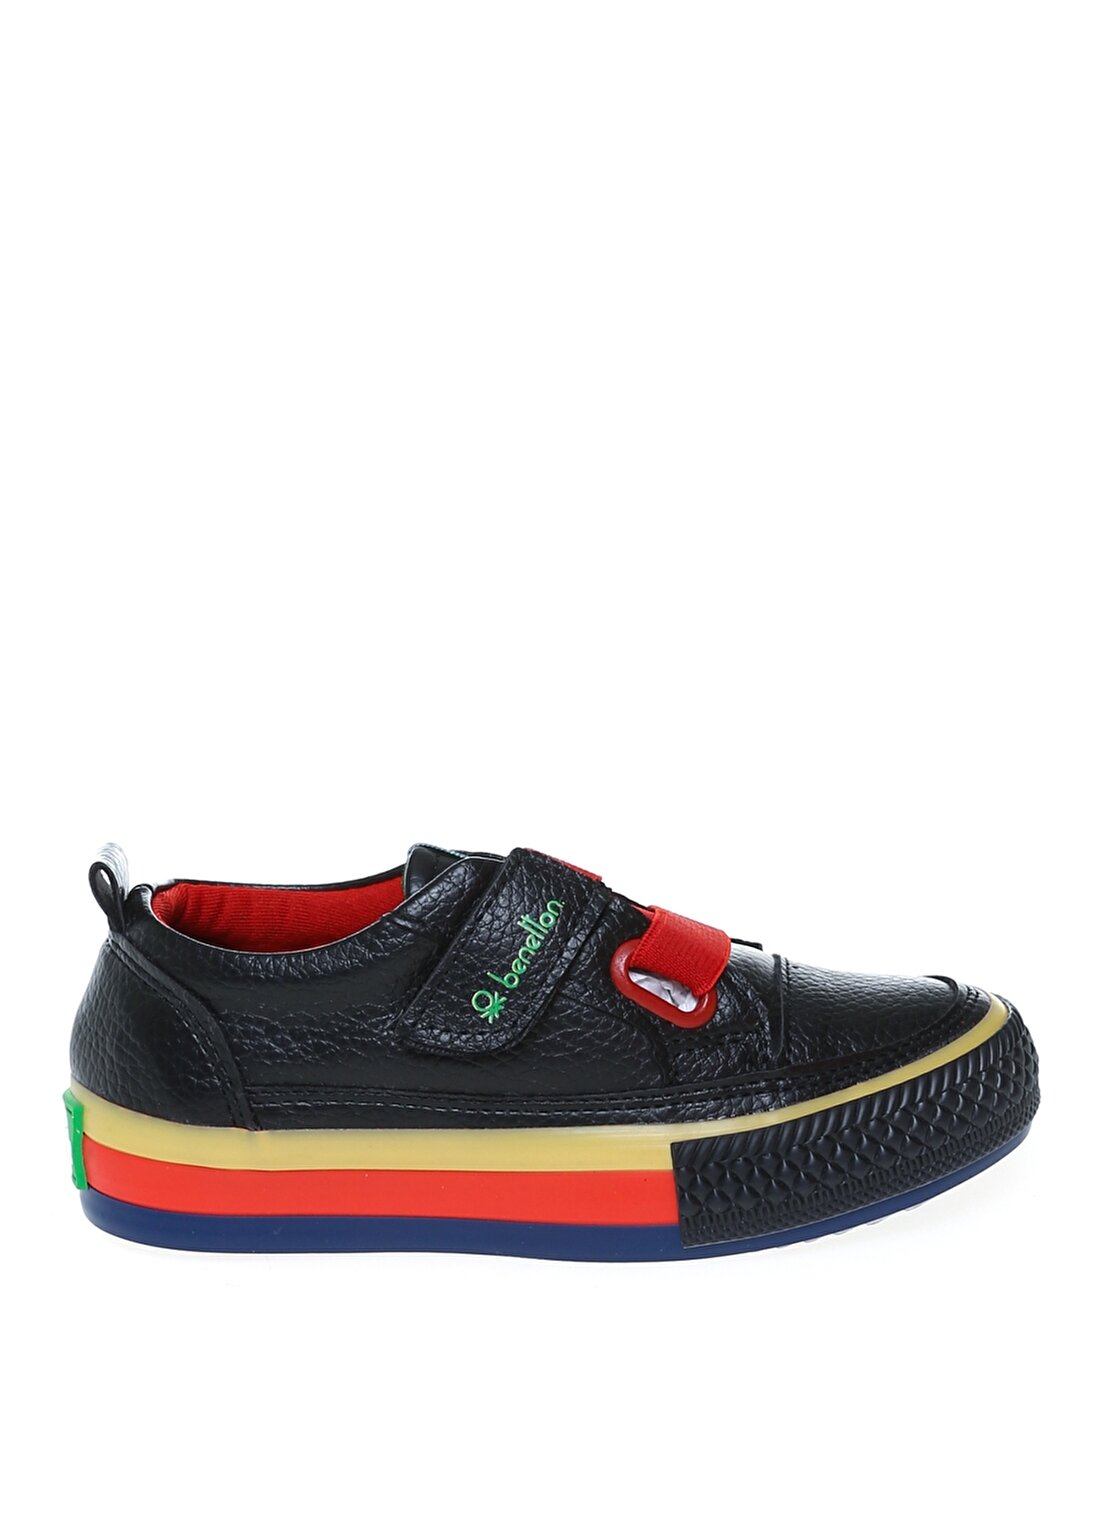 Benetton Siyah - Kırmızı Erkek Çocuk Yürüyüş Ayakkabısı BN-30441